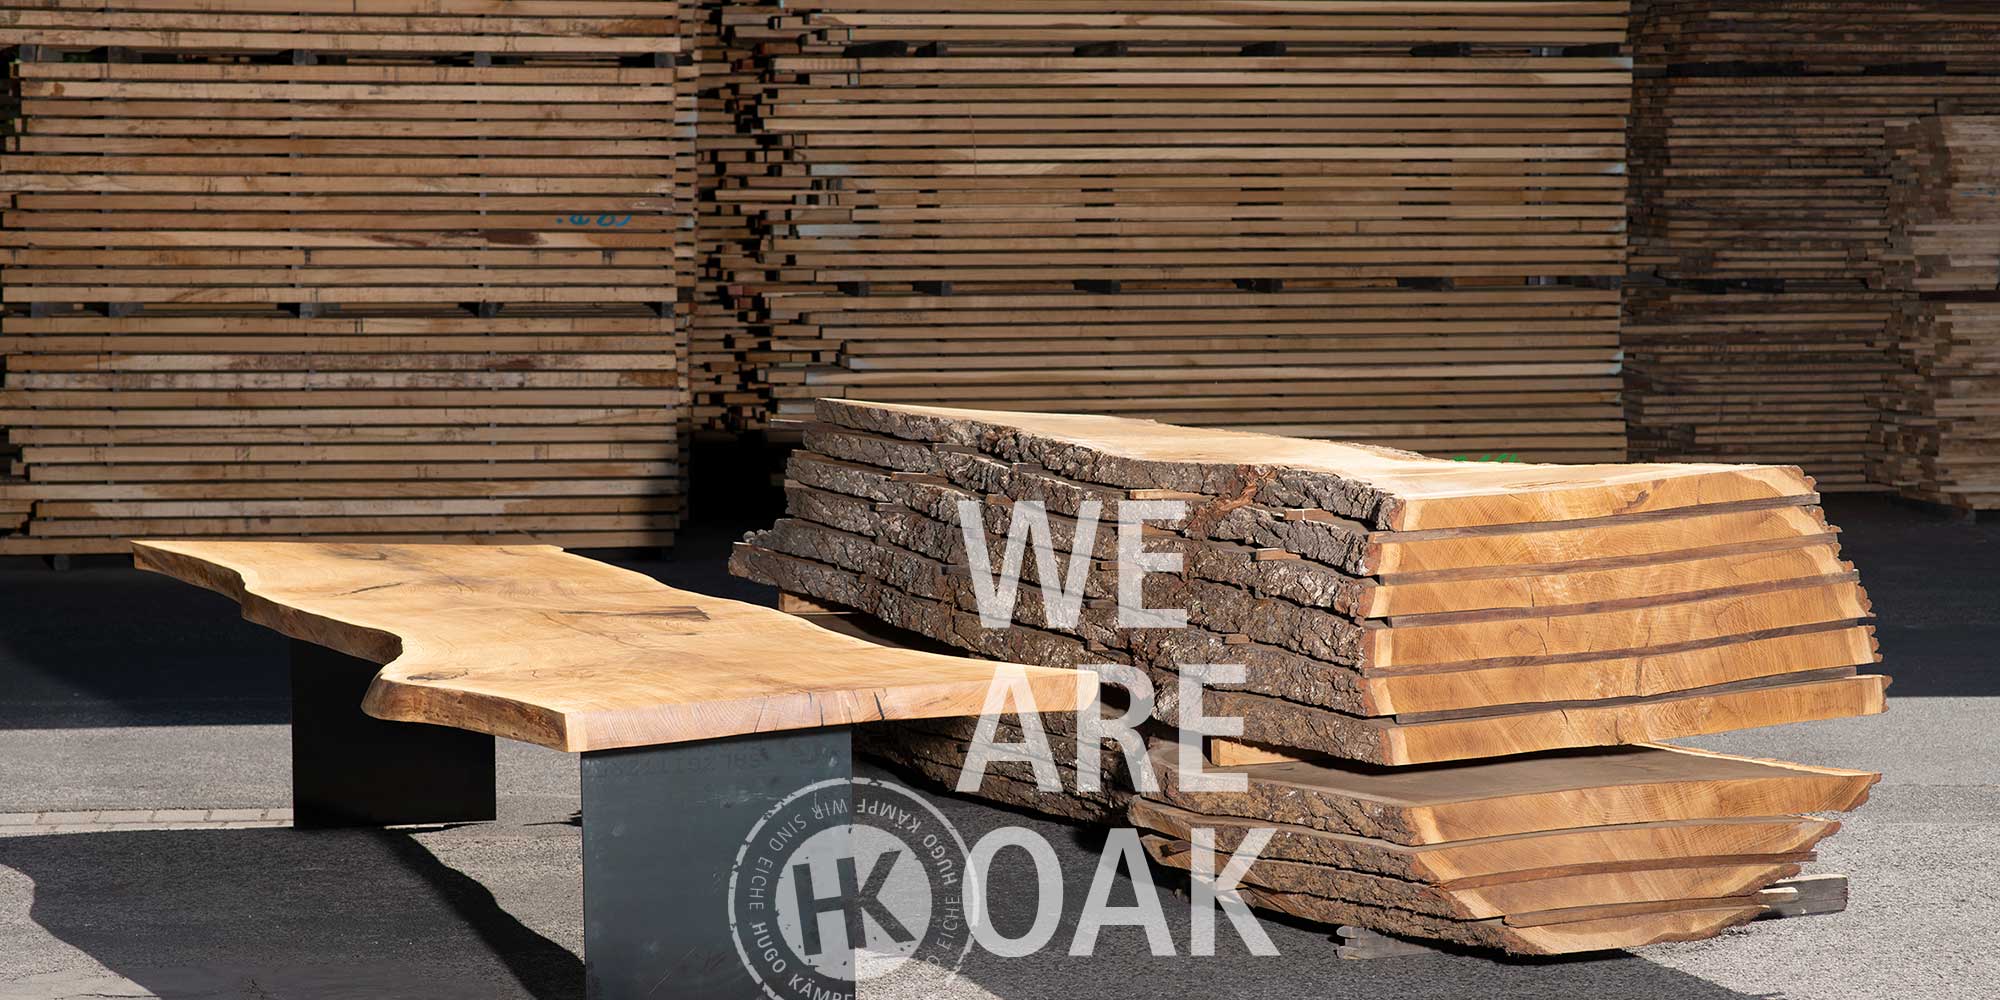 Oak wood products